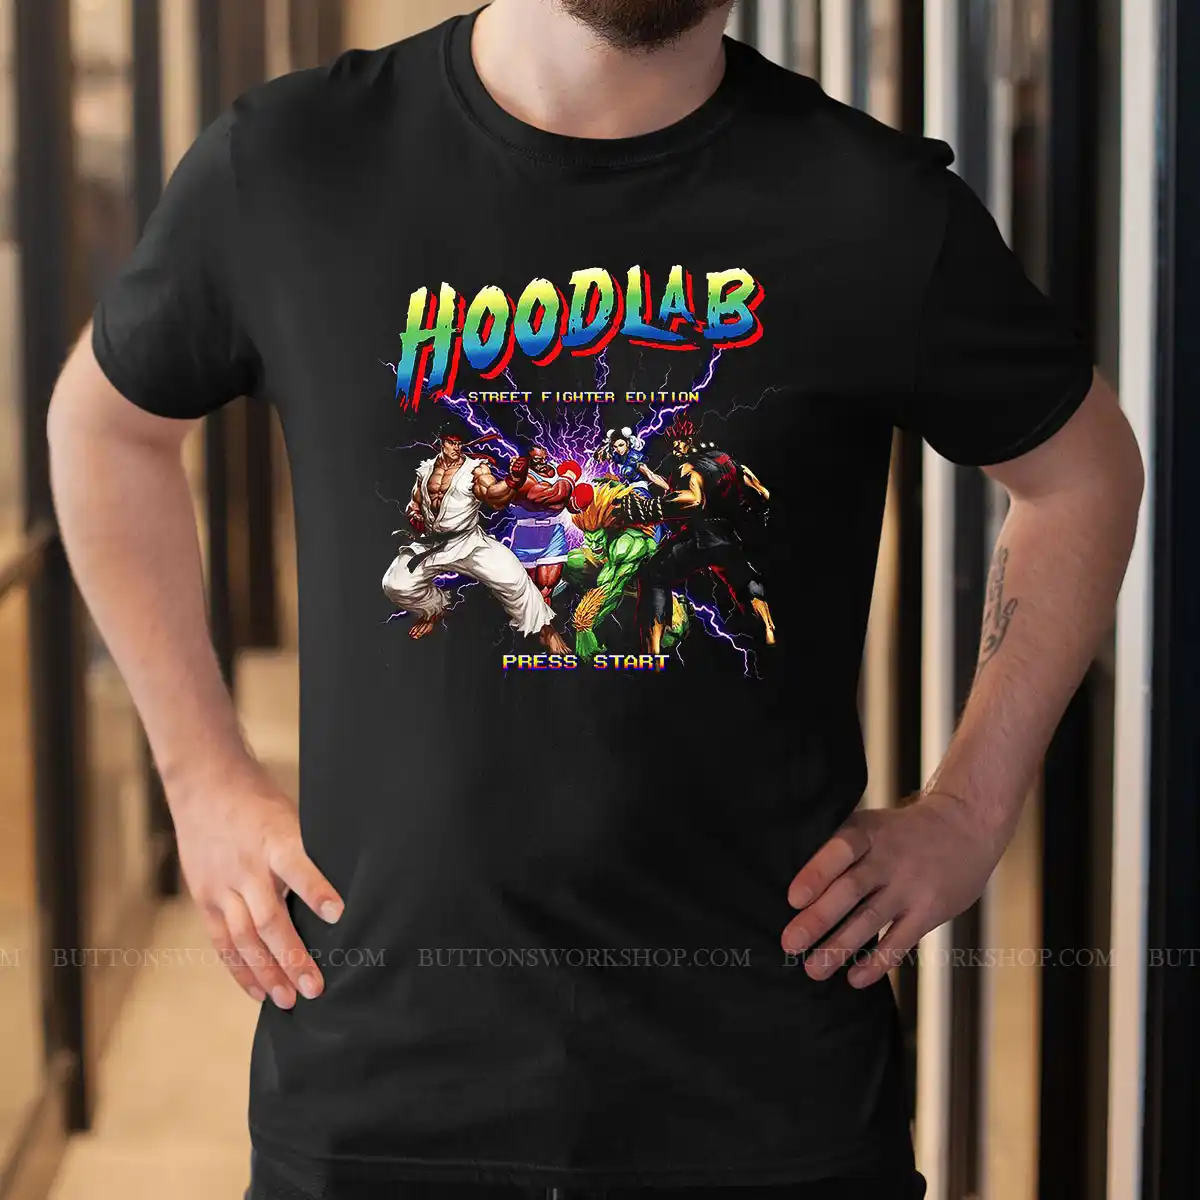 Hoodlab T Shirt Unisex Tshirt